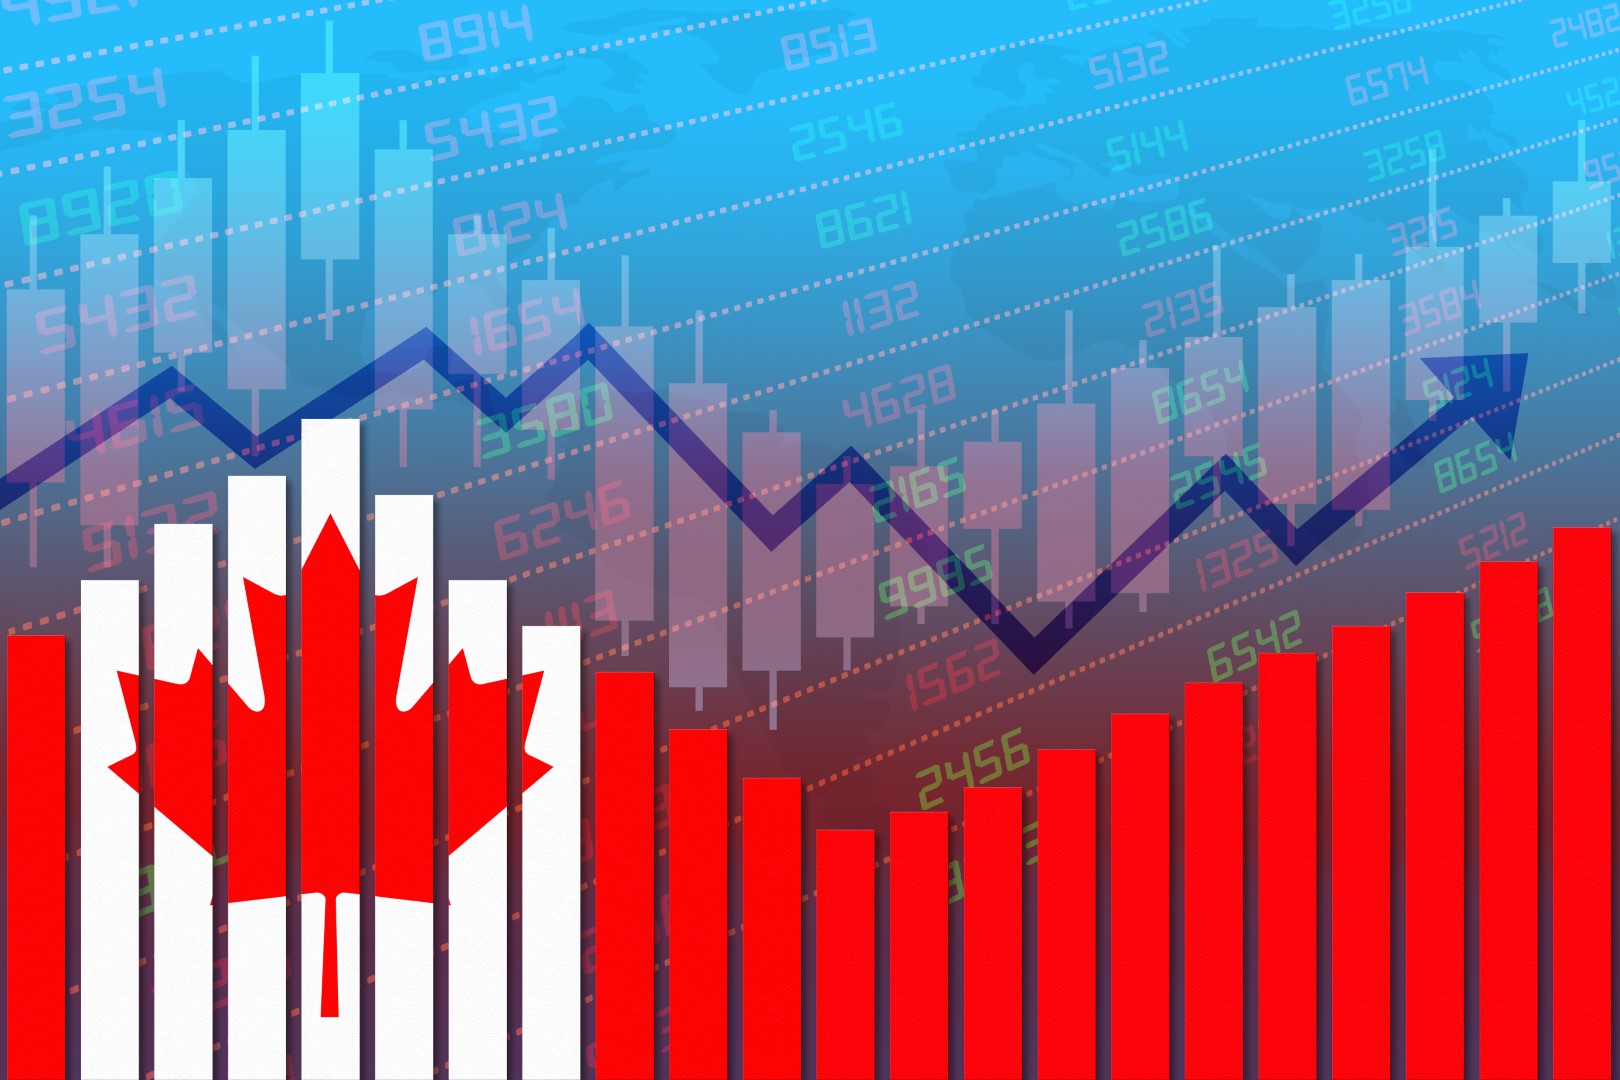 Banques canadiennes : Les investisseurs devraient-ils s’inquiéter (davantage) ? (fQ3 en graphiques)